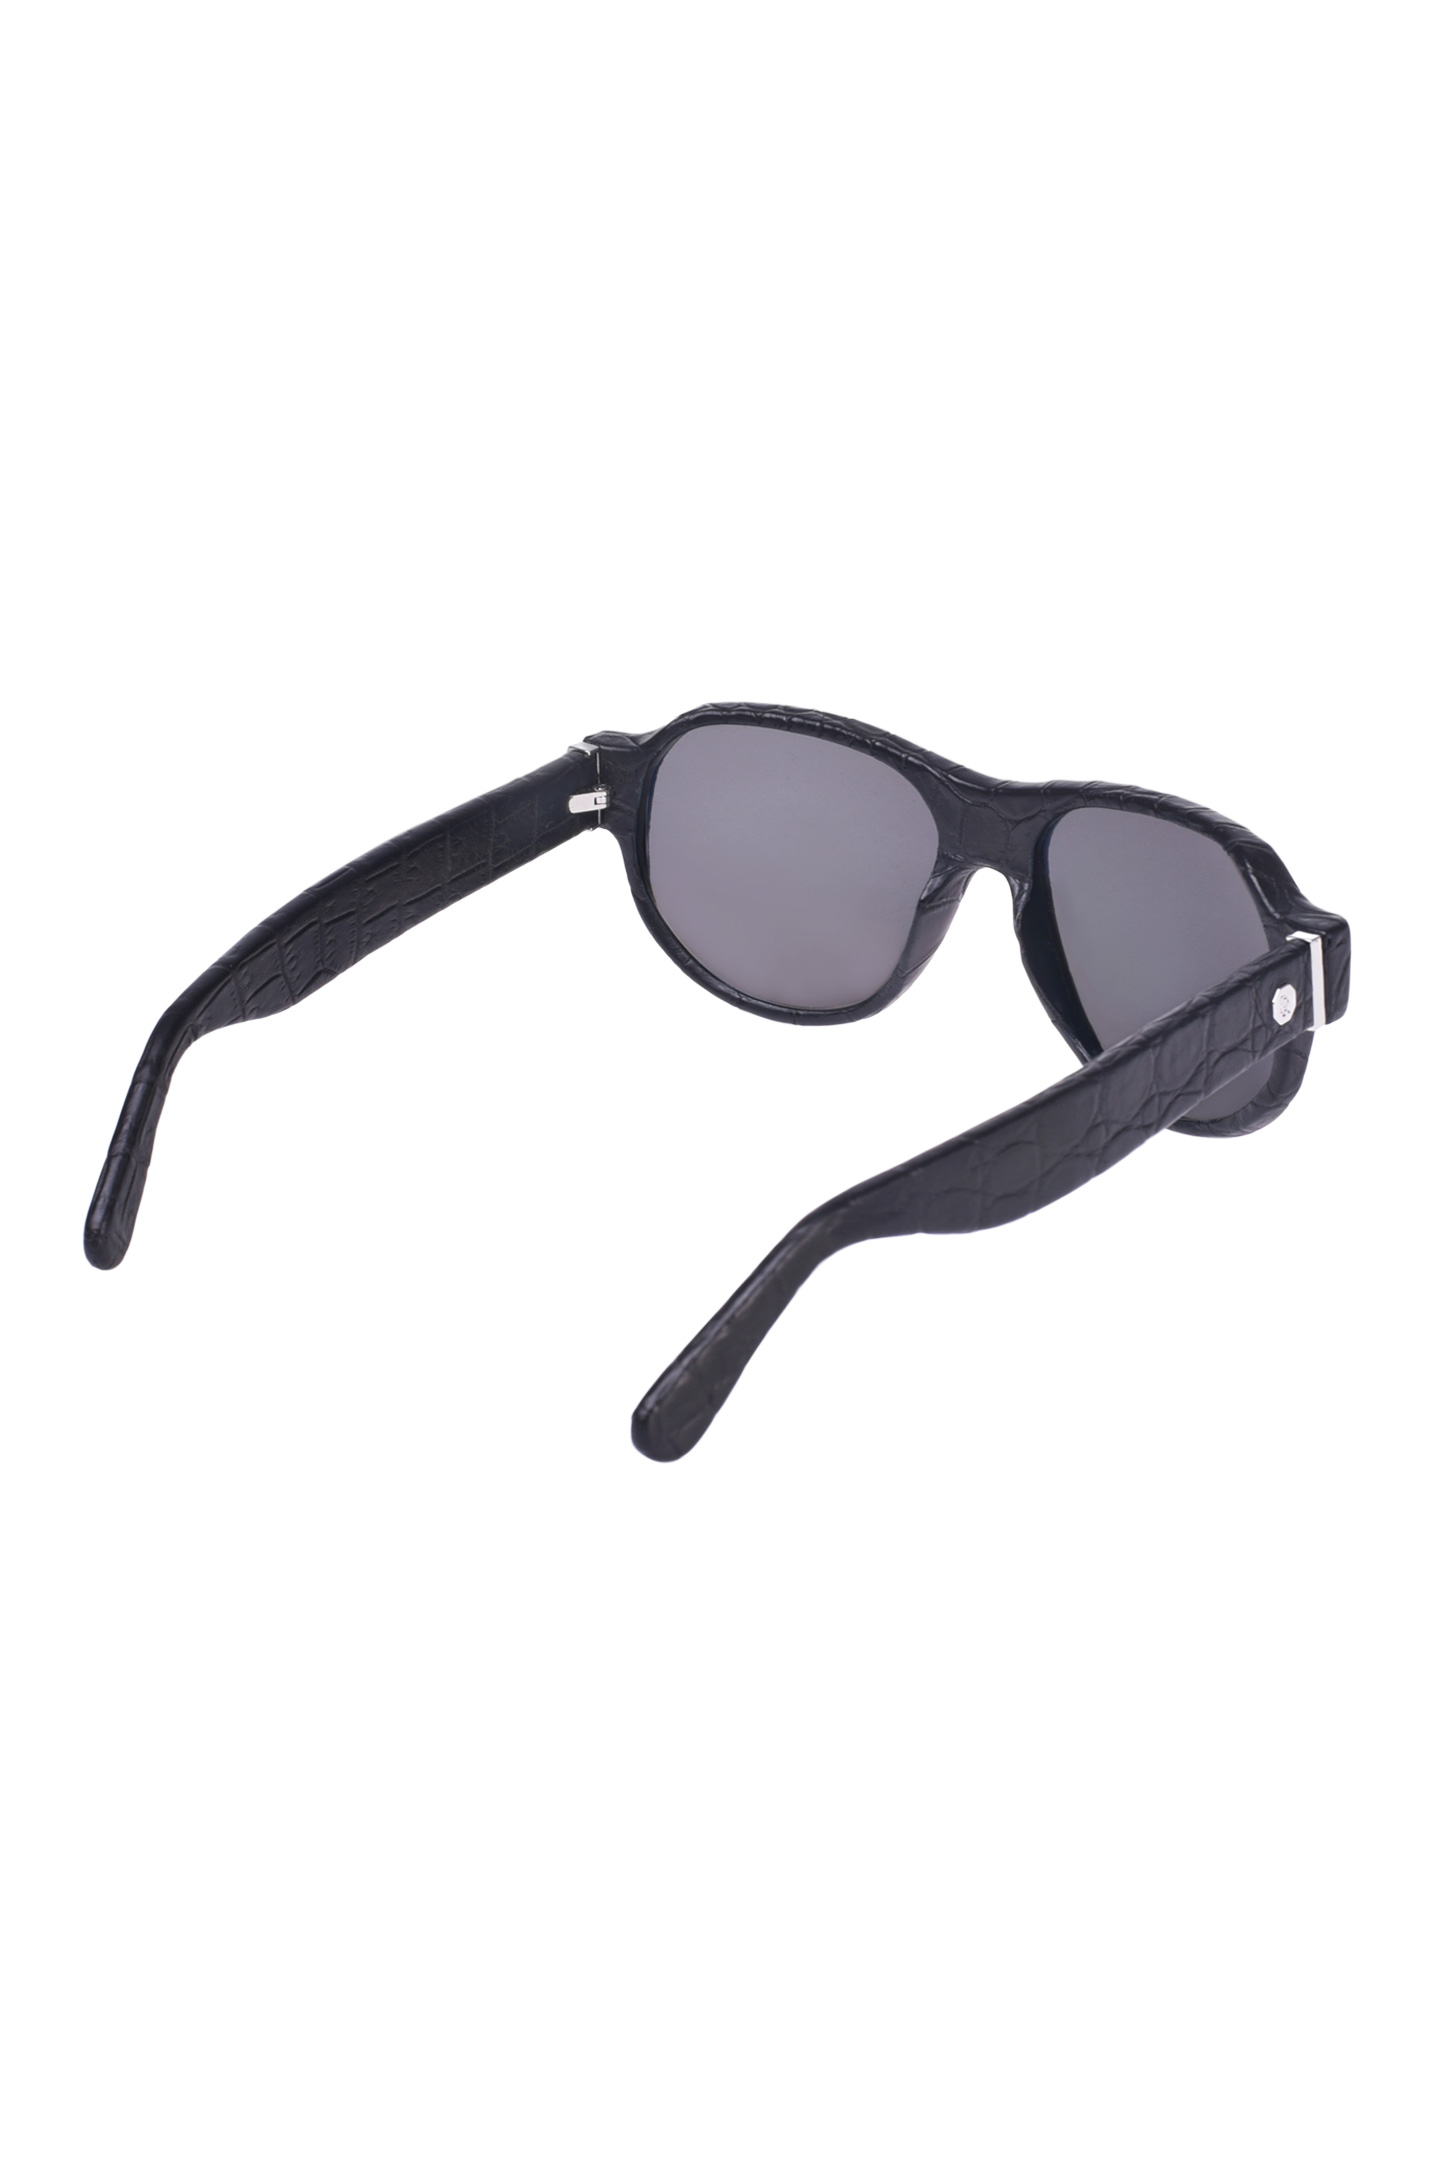 Солнцезащитные очки  STEFANO RICCI SG002P CS SGBOXP VDCS, цвет: Черный, Мужской